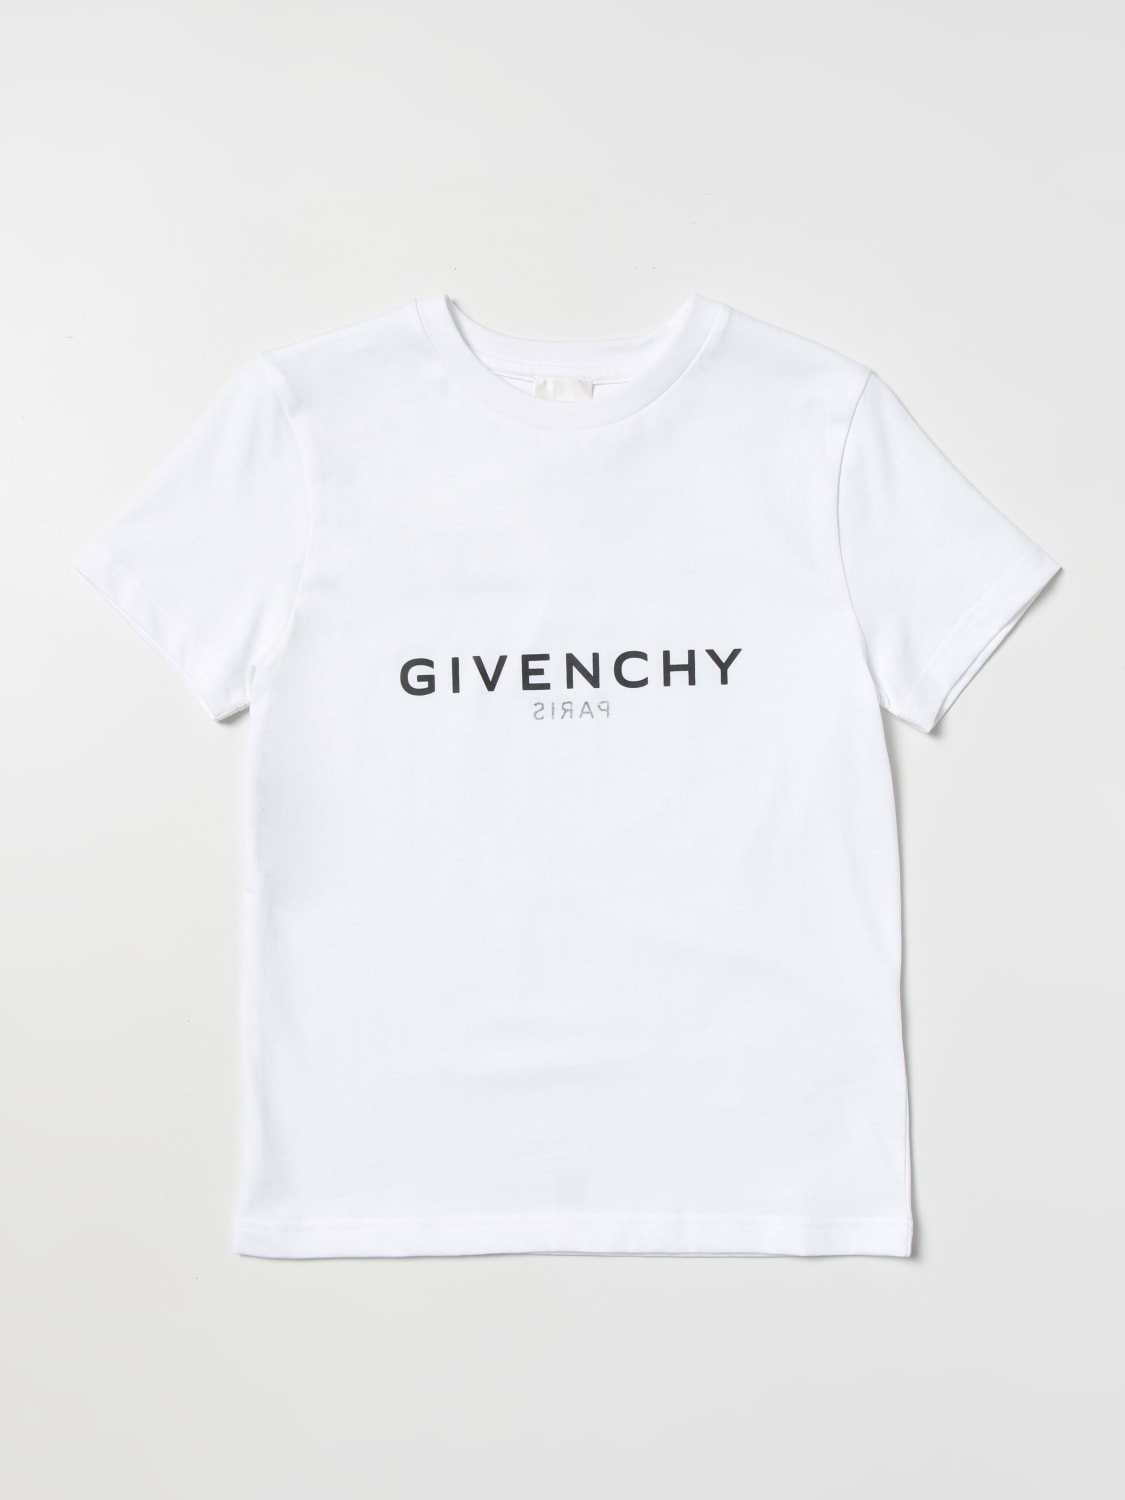 GIVENCHY (ジバンシー) Tシャツ袖丈約21cm